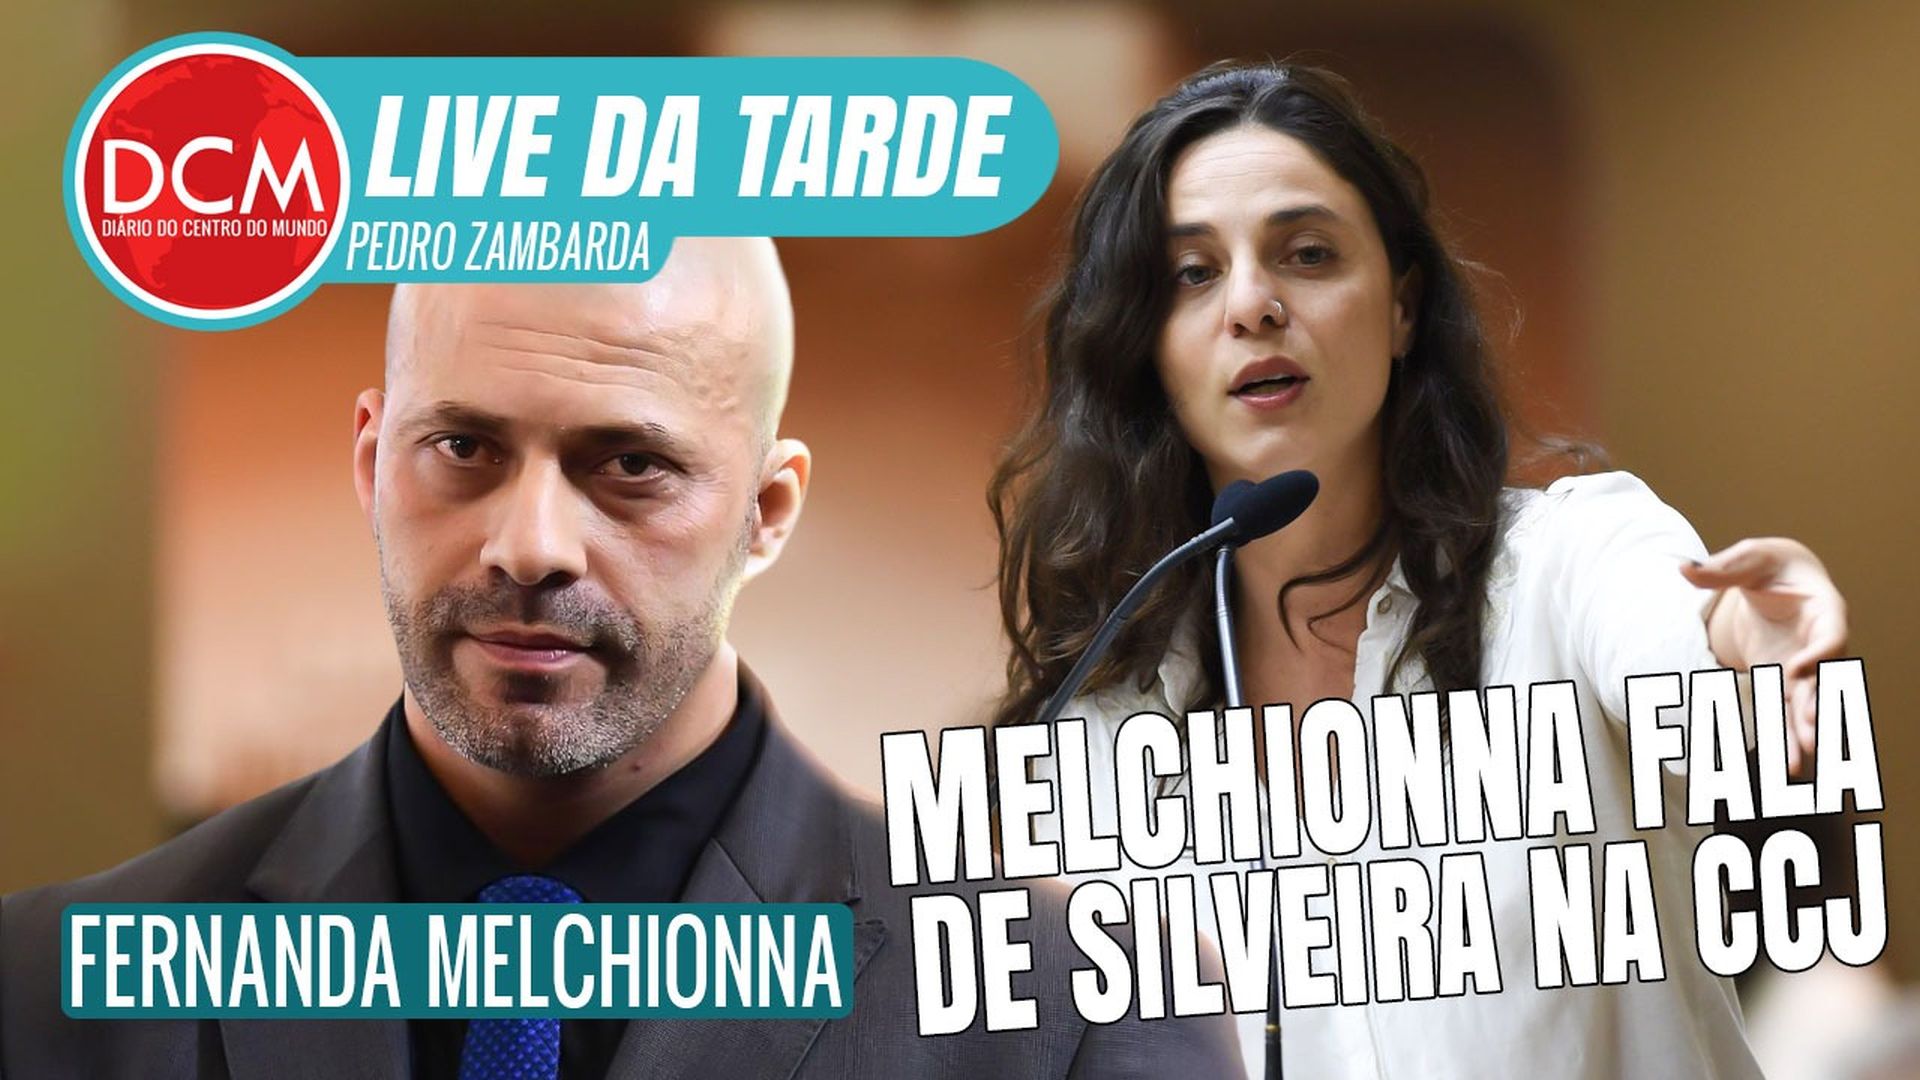 Live da Tarde: Condenado pelo STF, Daniel Silveira vai para CCJ e Melchionna comenta